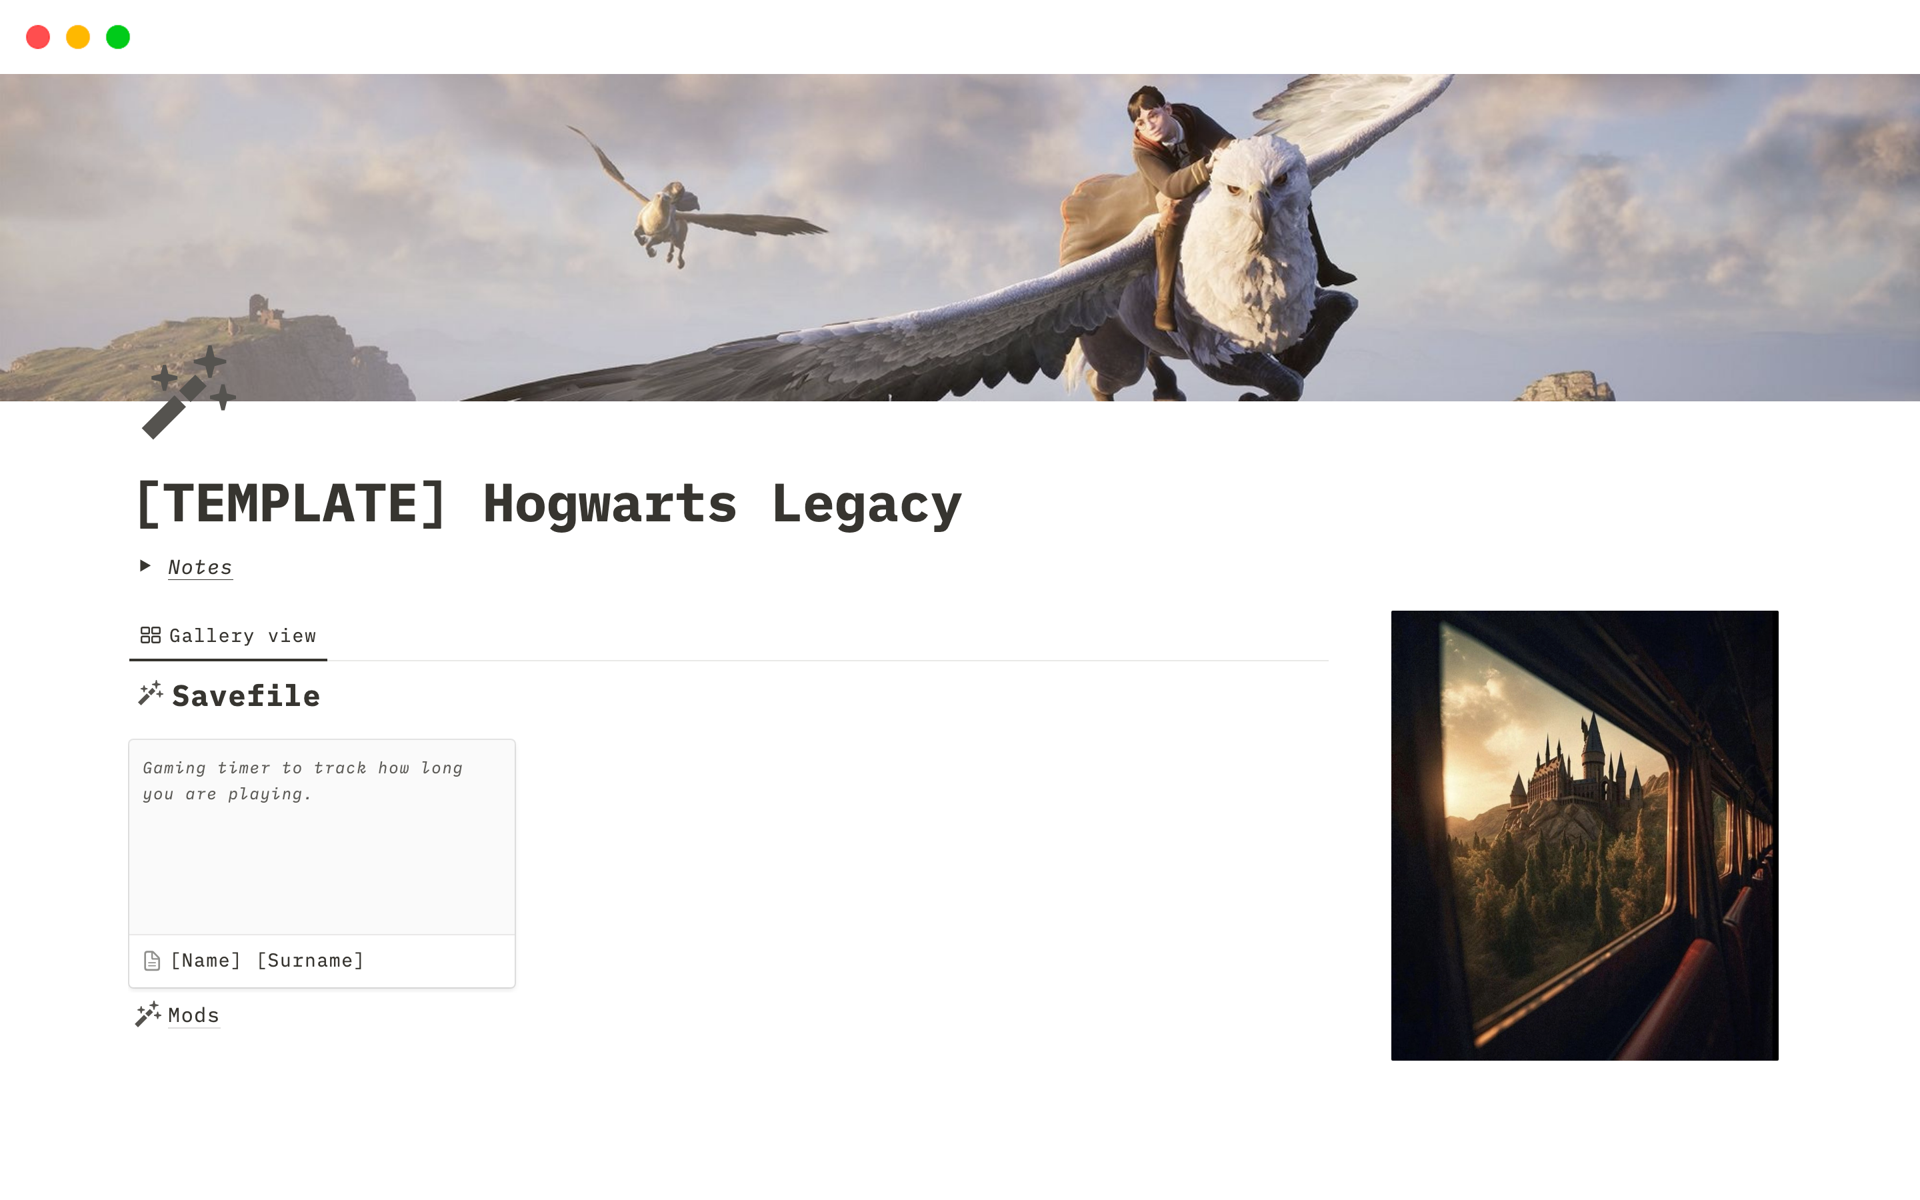 Eine Vorlagenvorschau für Hogwarts Legacy